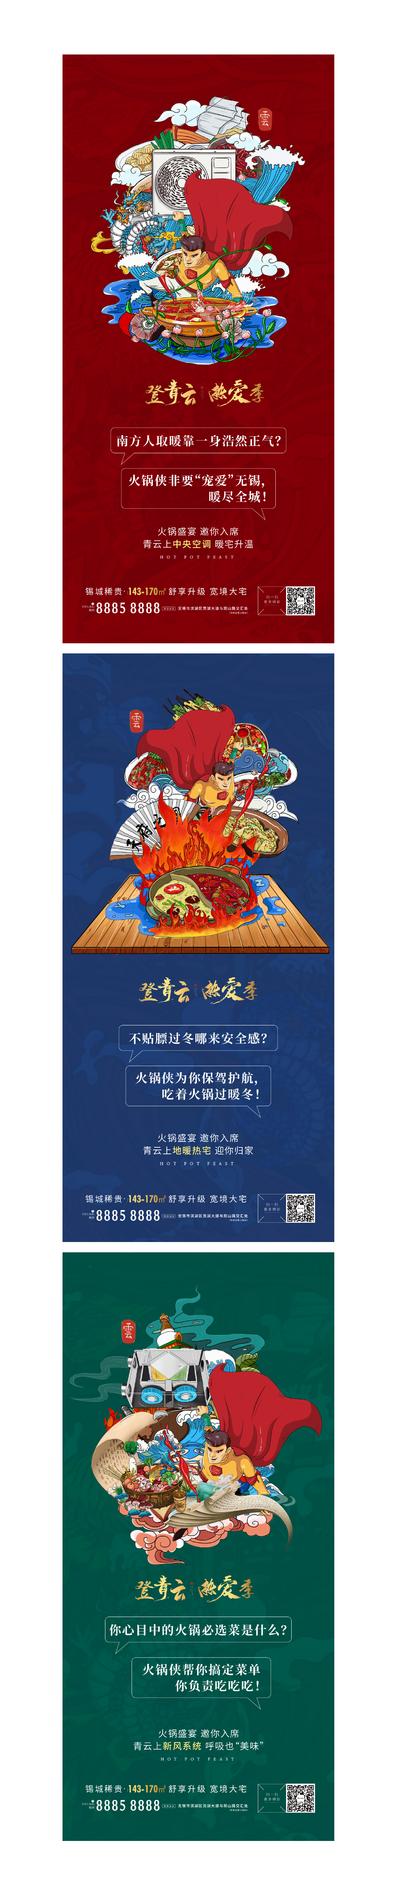 南门网 海报 房地产 美食节 火锅 插画 手绘 国潮 暖场活动